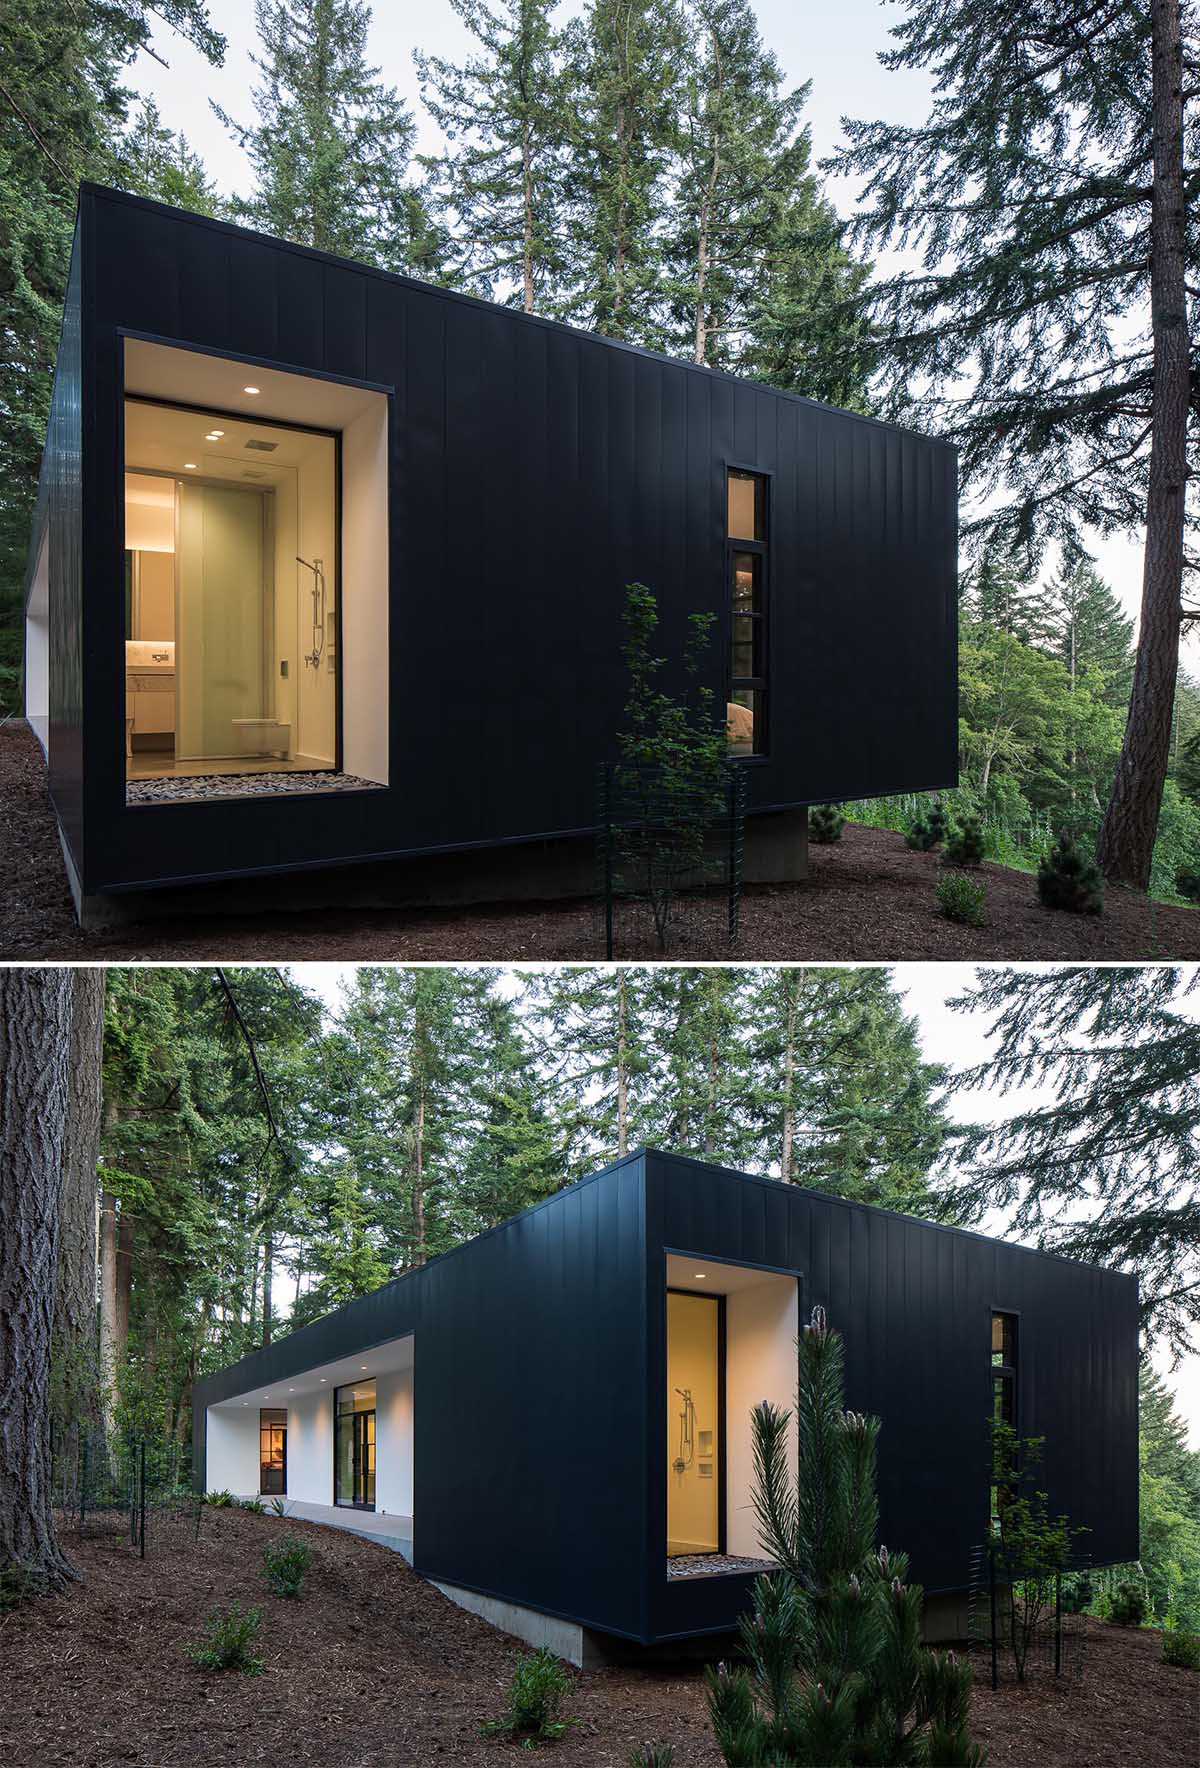 Một ngôi nhà nhỏ và hiện đại với vữa trắng và các tấm kim loại đen ở bên ngoài.